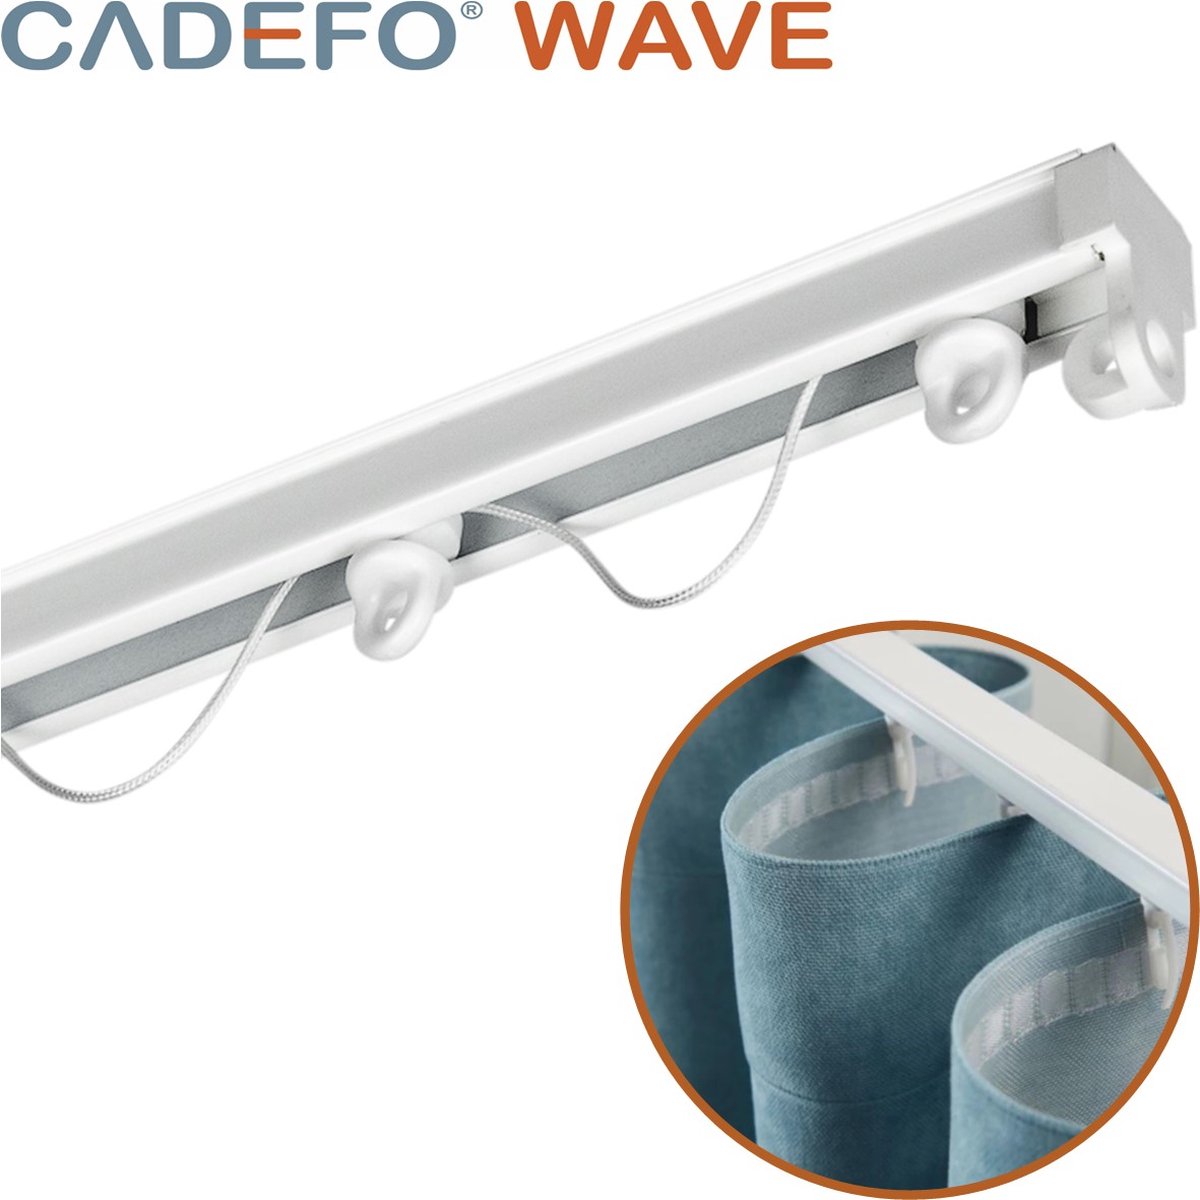 CADEFO WAVE (351 - 400 cm) Gordijnrails - Compleet op maat! - UIT 1 STUK - Leverbaar tot 6 meter - Plafondbevestiging - Lengte 352 cm